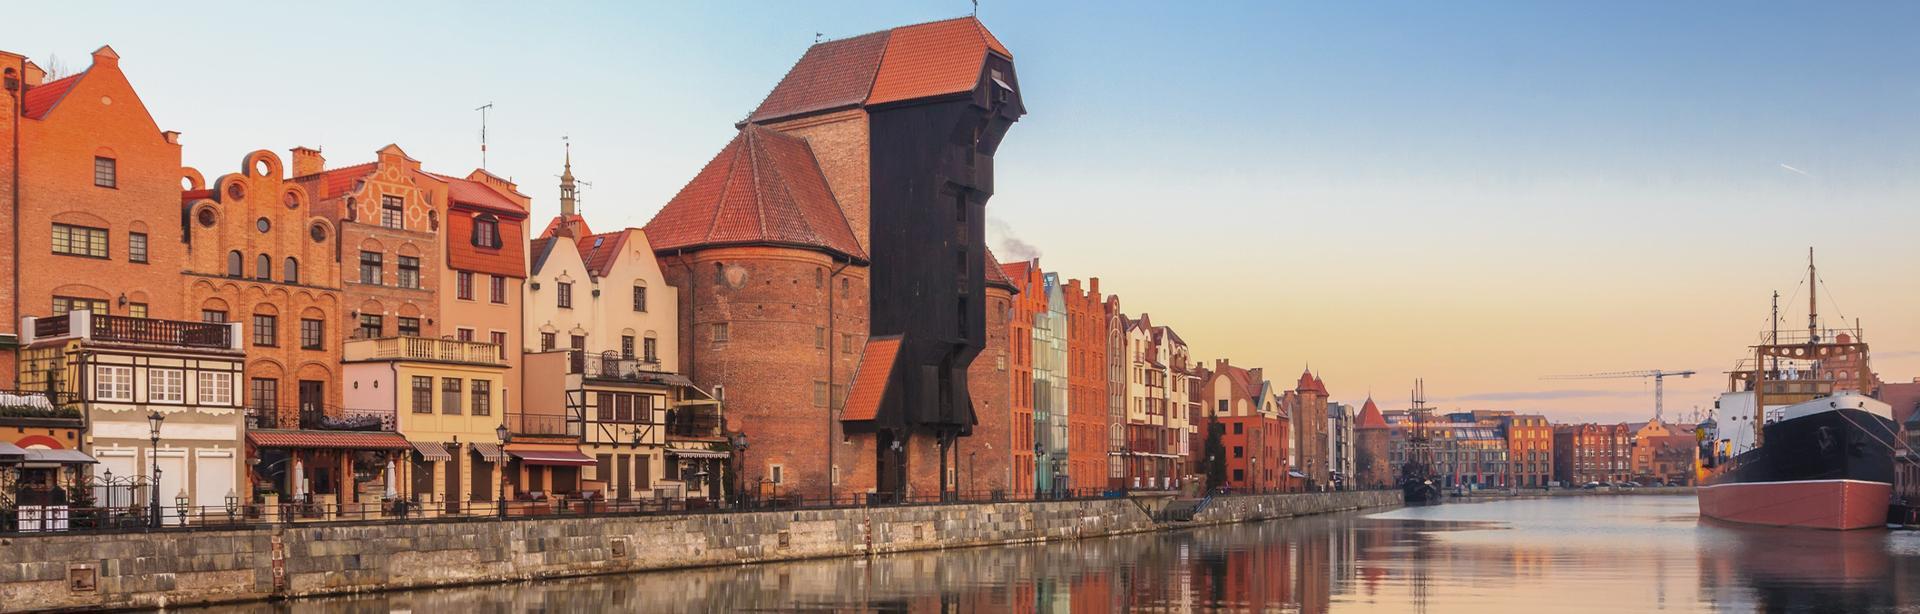 Stare miasto Gdańsk Slajd #1